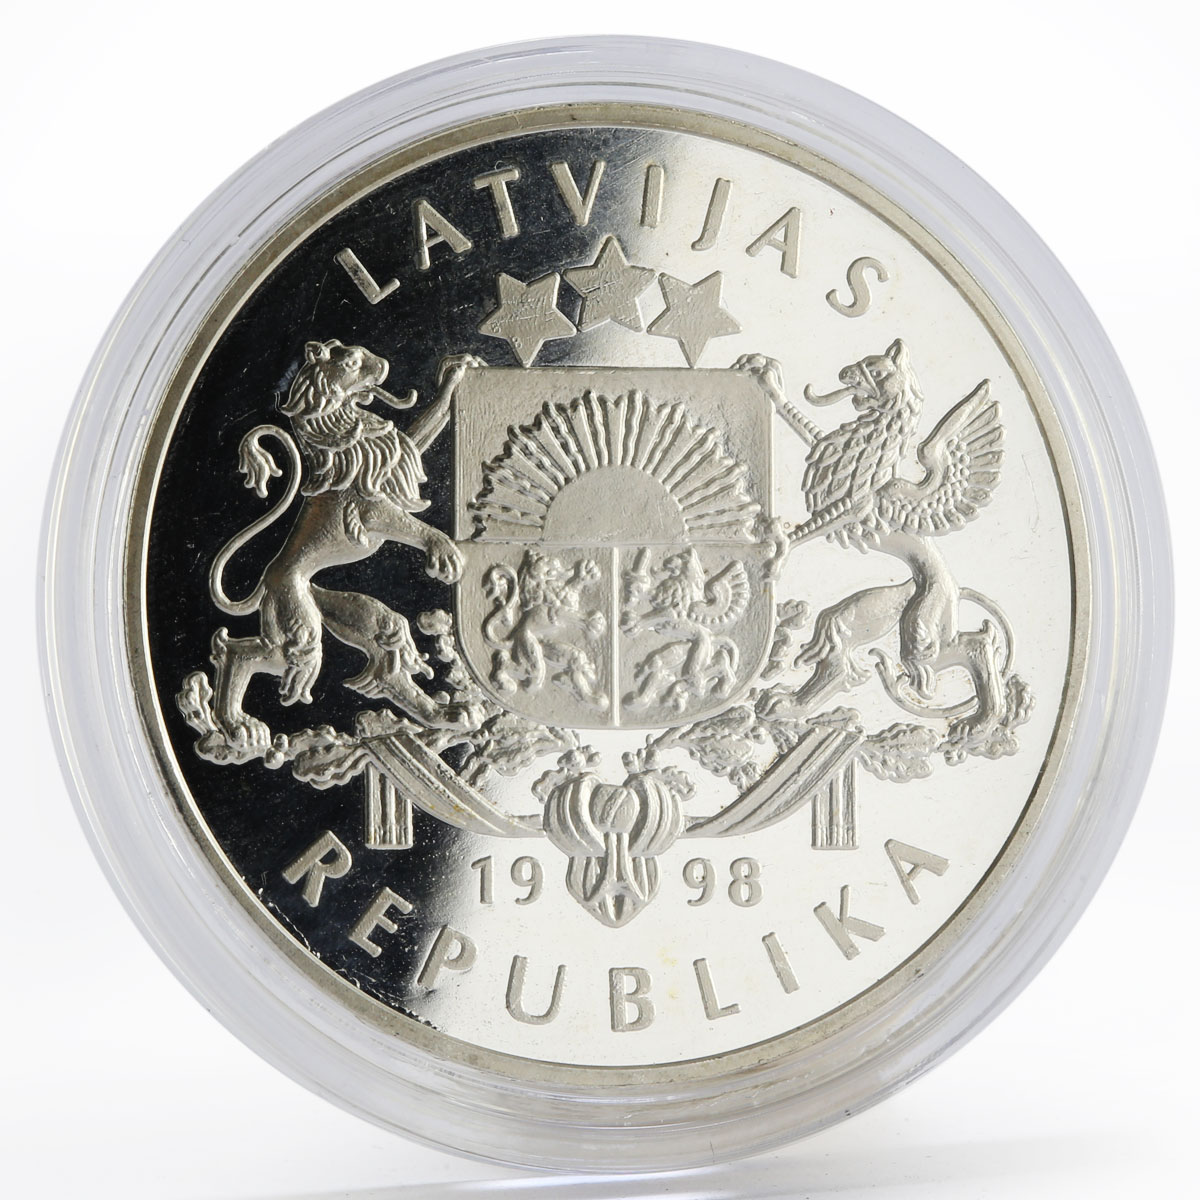 Latvia 10 latu 1925 Icebreaker “Krisjanis Valdemars” proof silver coin 1998